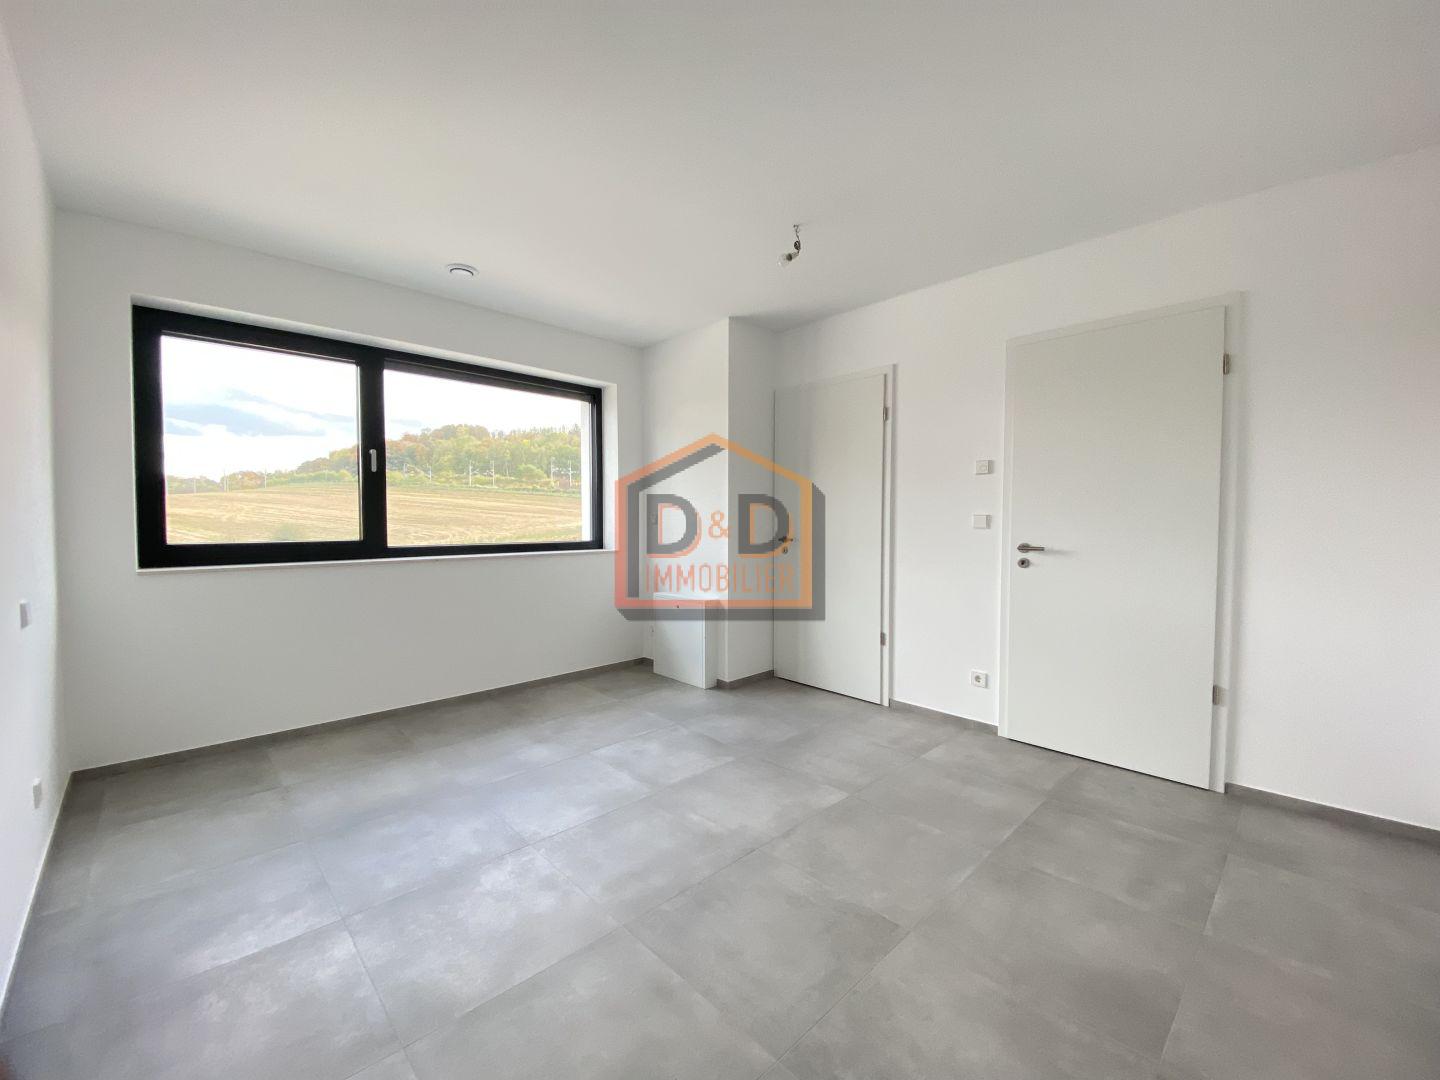 Maison à Differdange, 170 m², 3 chambres, 1 salle de bain, 2 garages, 2 700 €/mois